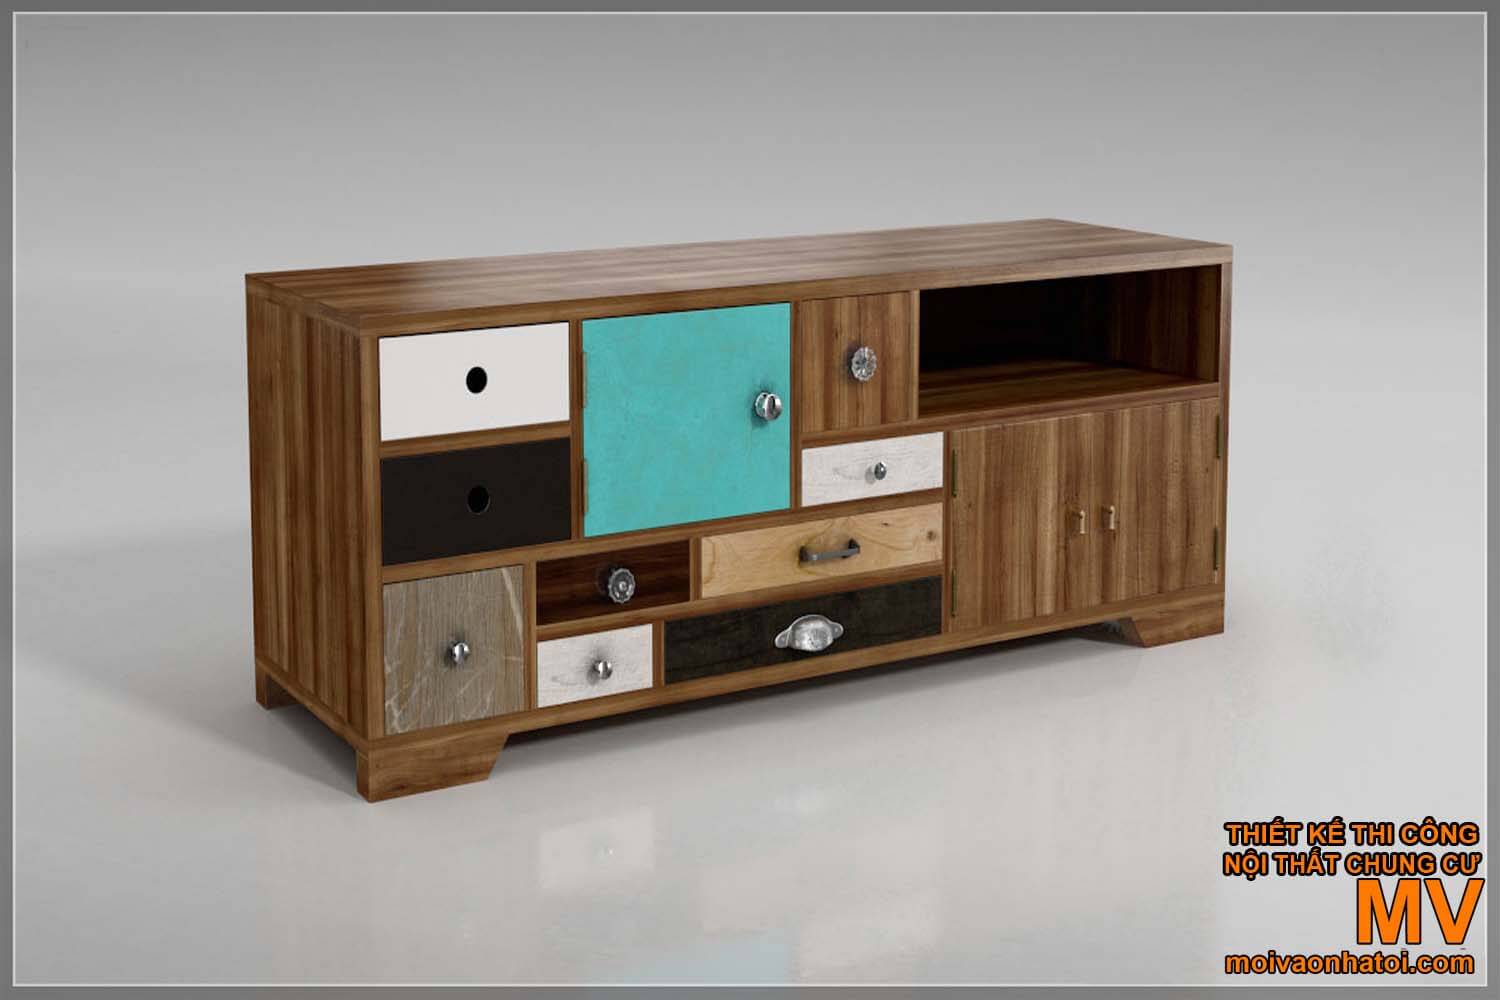 美しい木製のテレビ棚